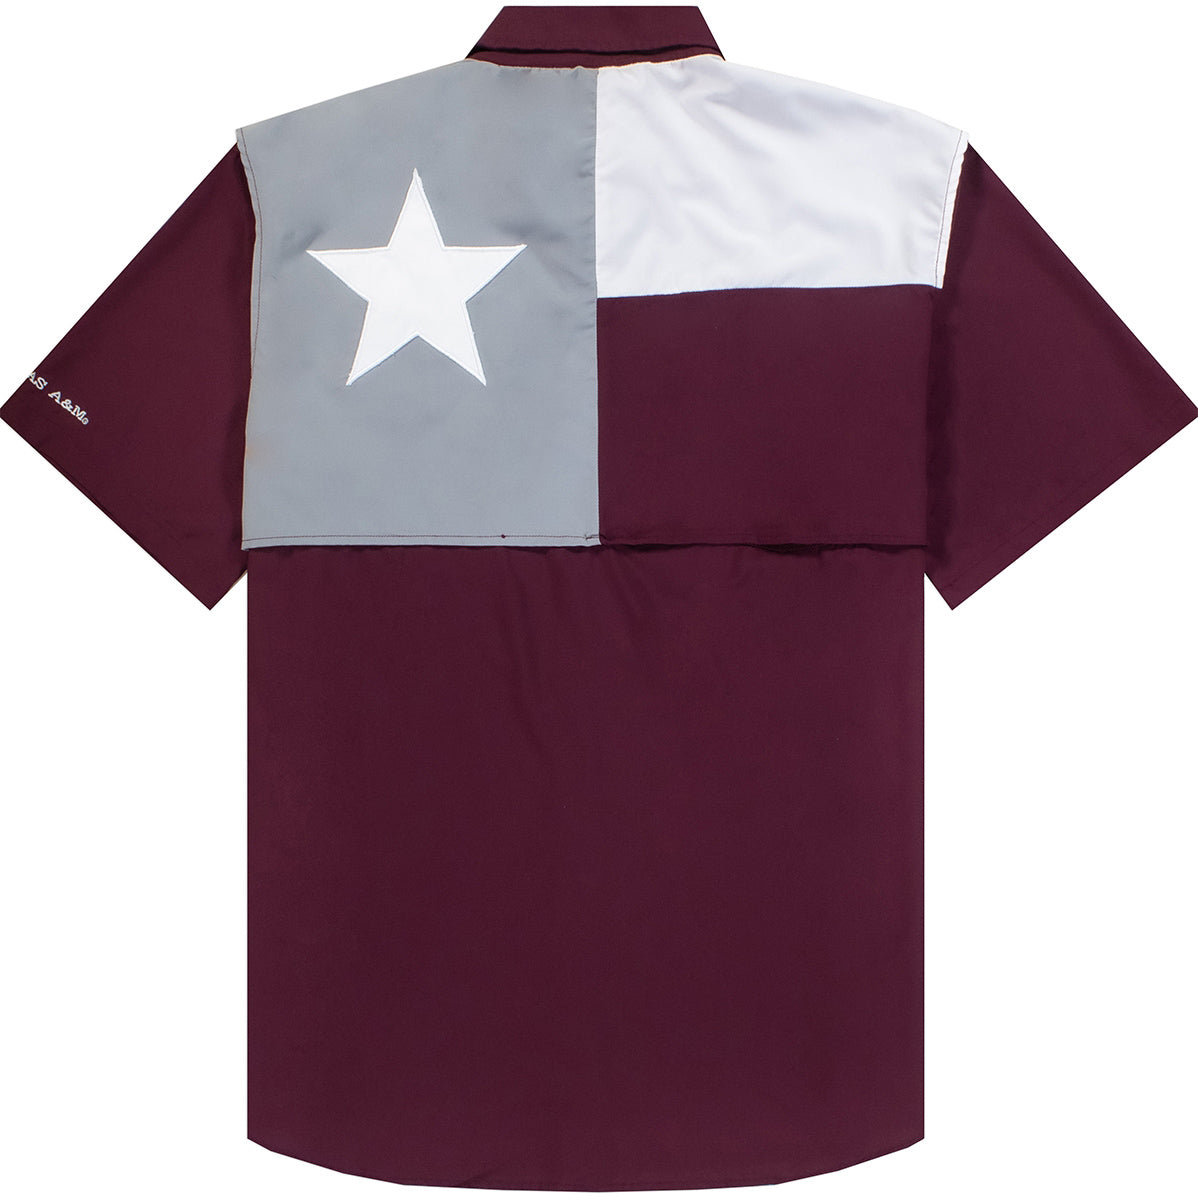 Perpetual Printing L Texas A&M Performance Flag Fishing Shirt XL / Maroon